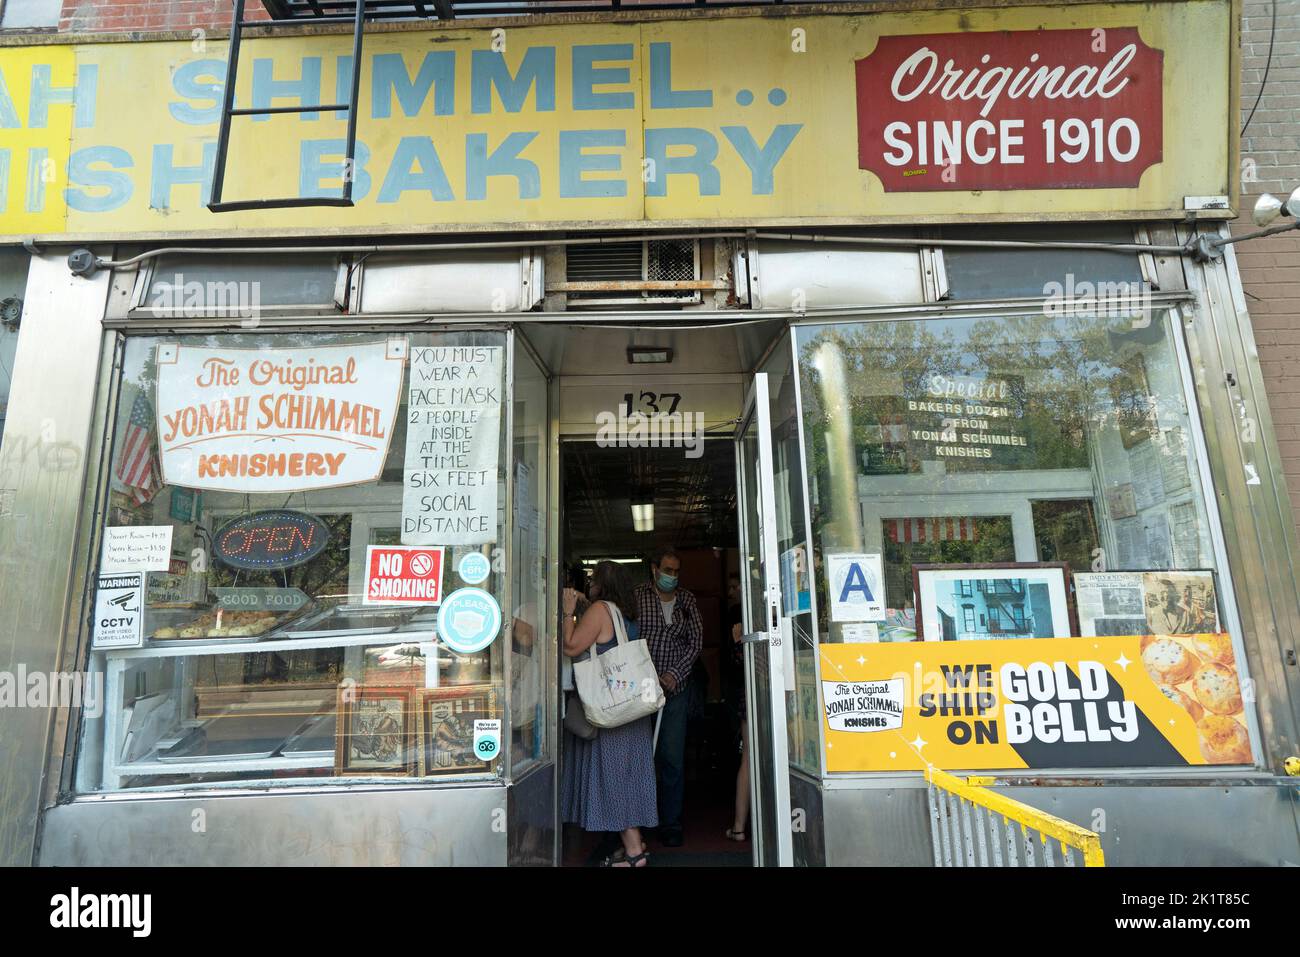 Die Yonah Schimmel knish Bäckerei befindet sich seit 1910 in der East Houston Street 137 auf Manhattans Lower East Side, als die Gegend voller Einwanderer war. Stockfoto